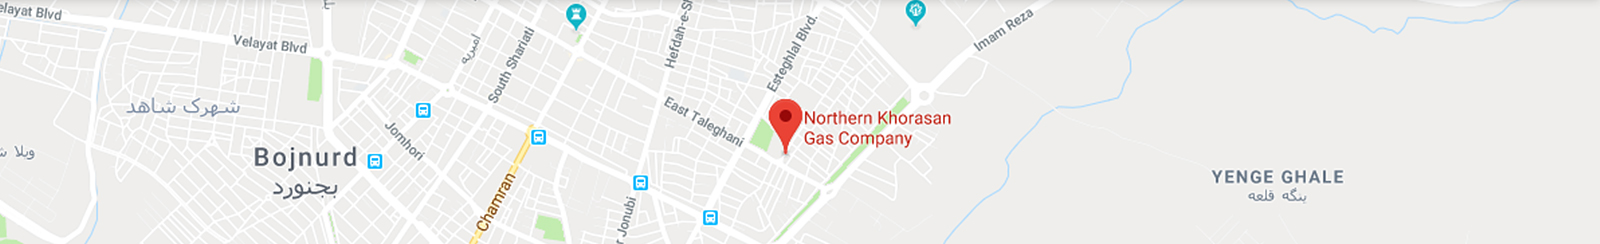 نقشه شرکت گاز خراسان شمالی